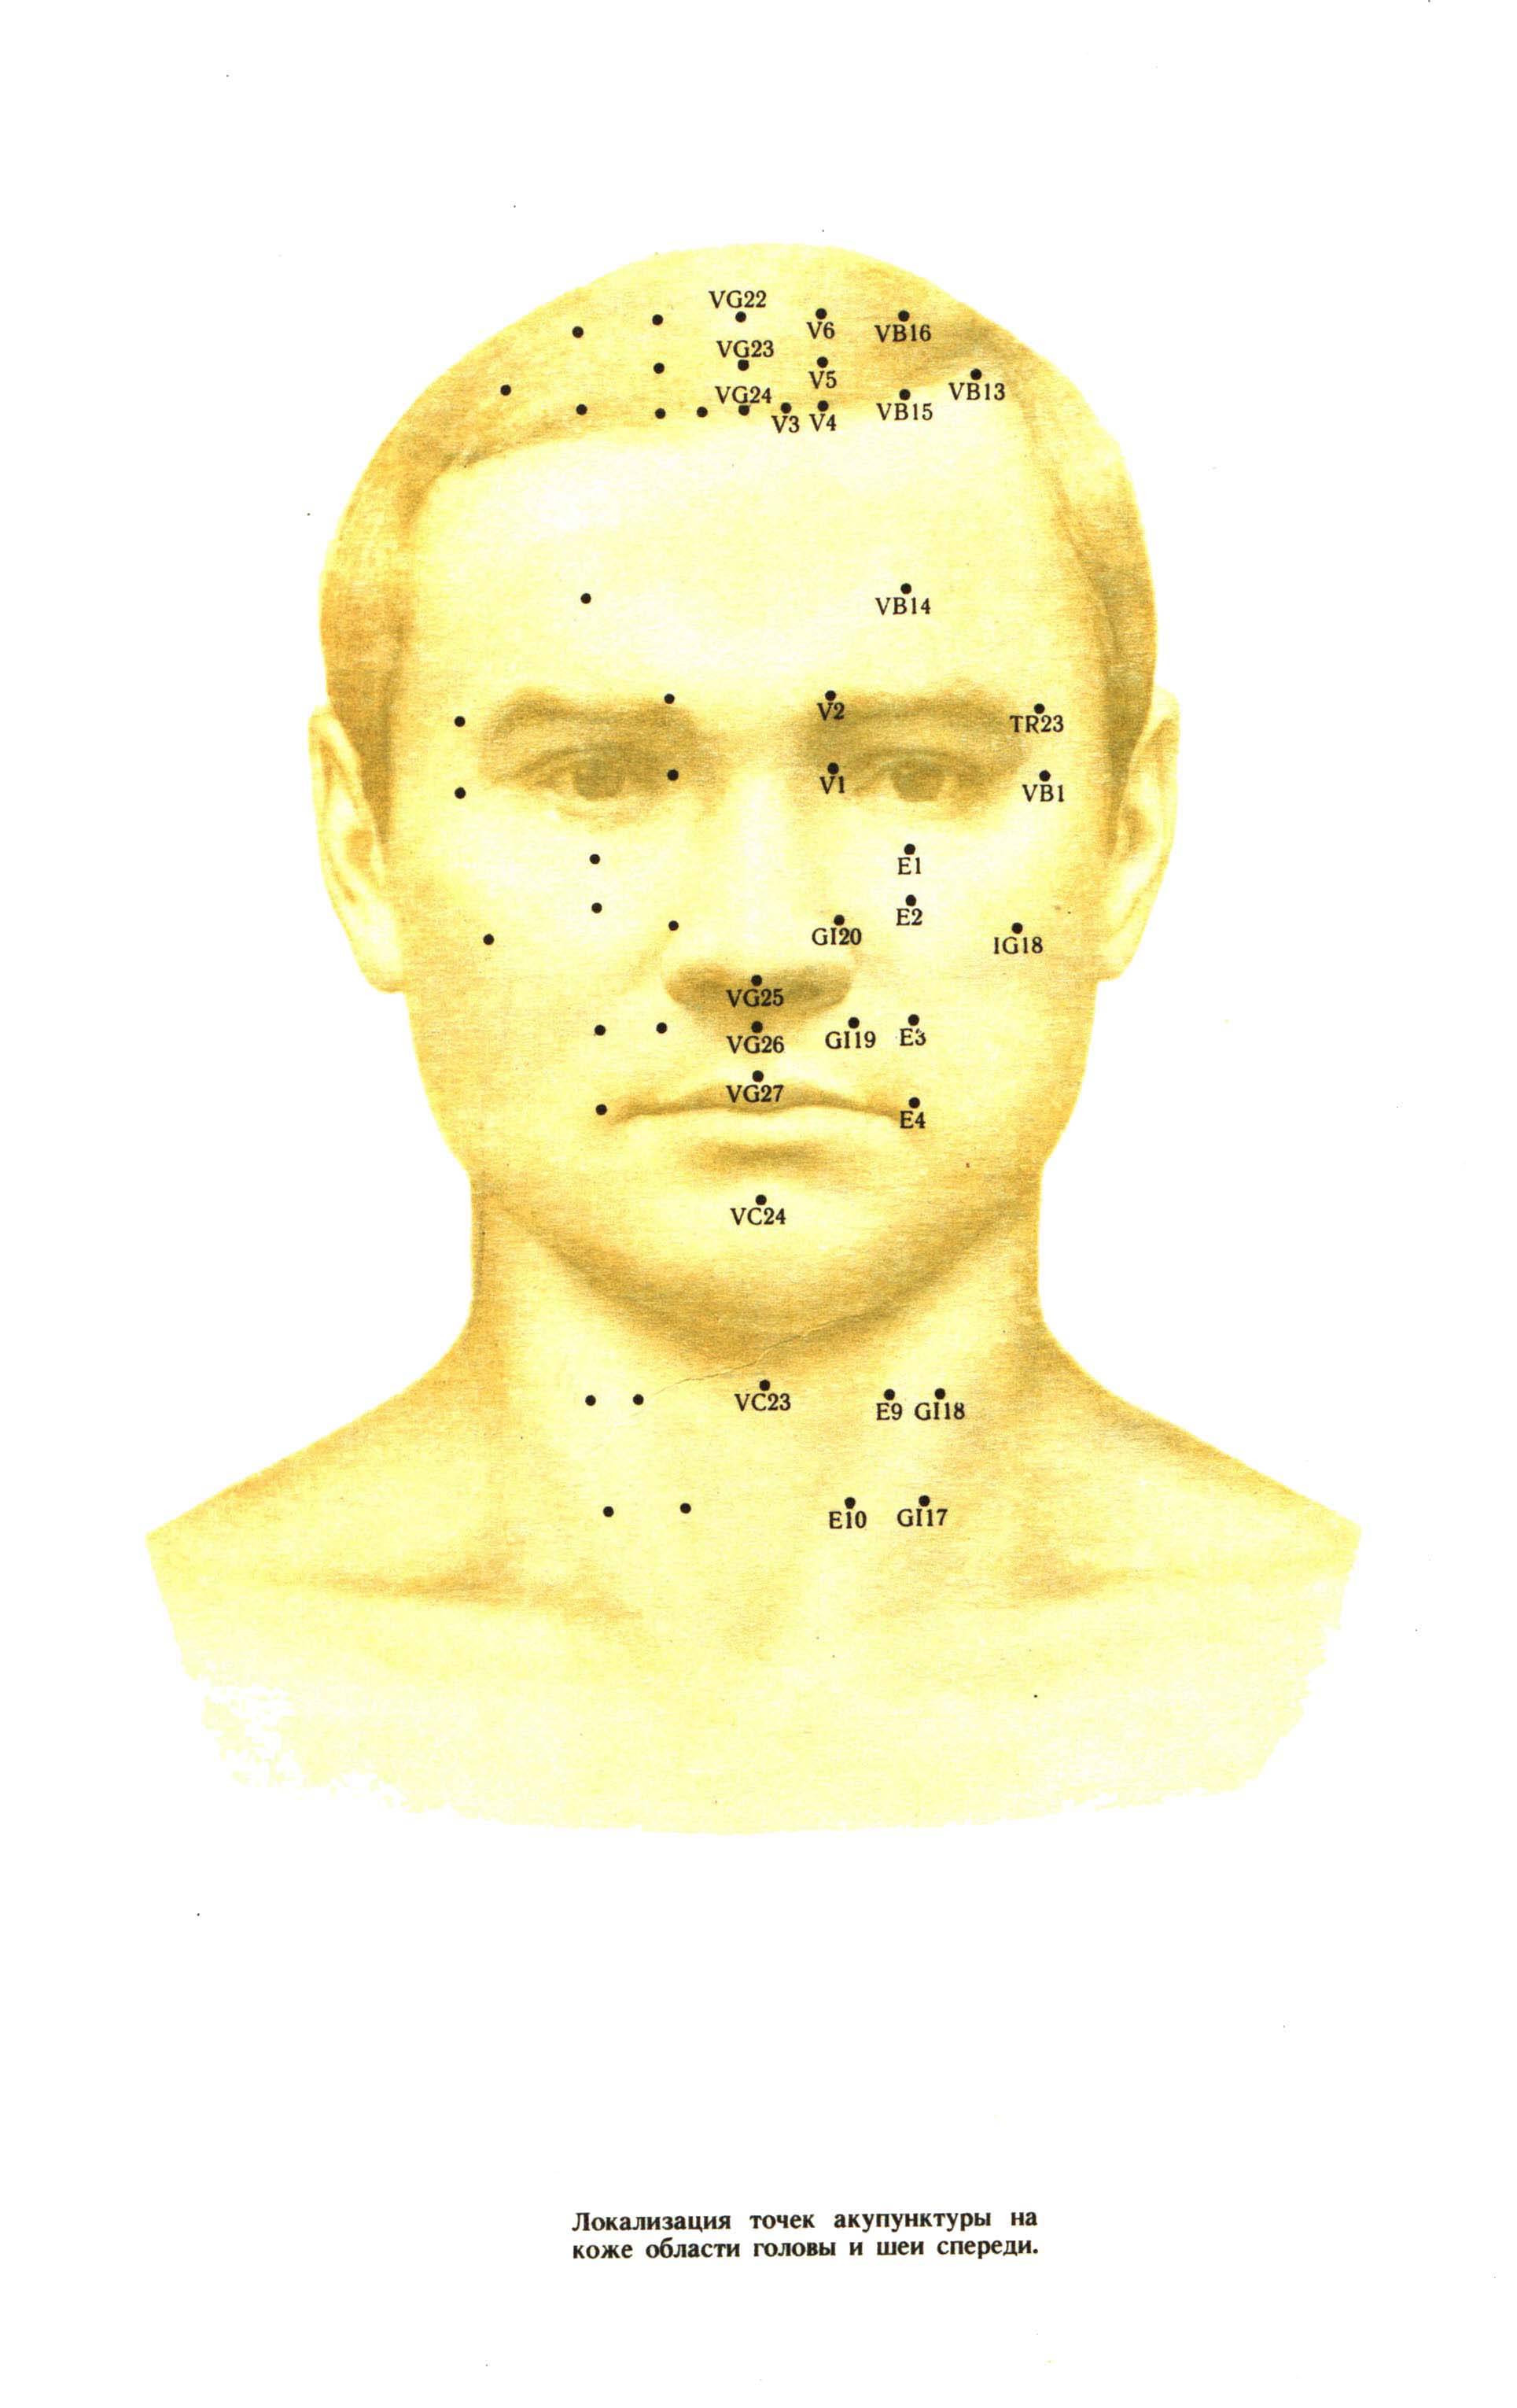 Рефлексотерапия, точки расположенные на лицевой стороне головы.